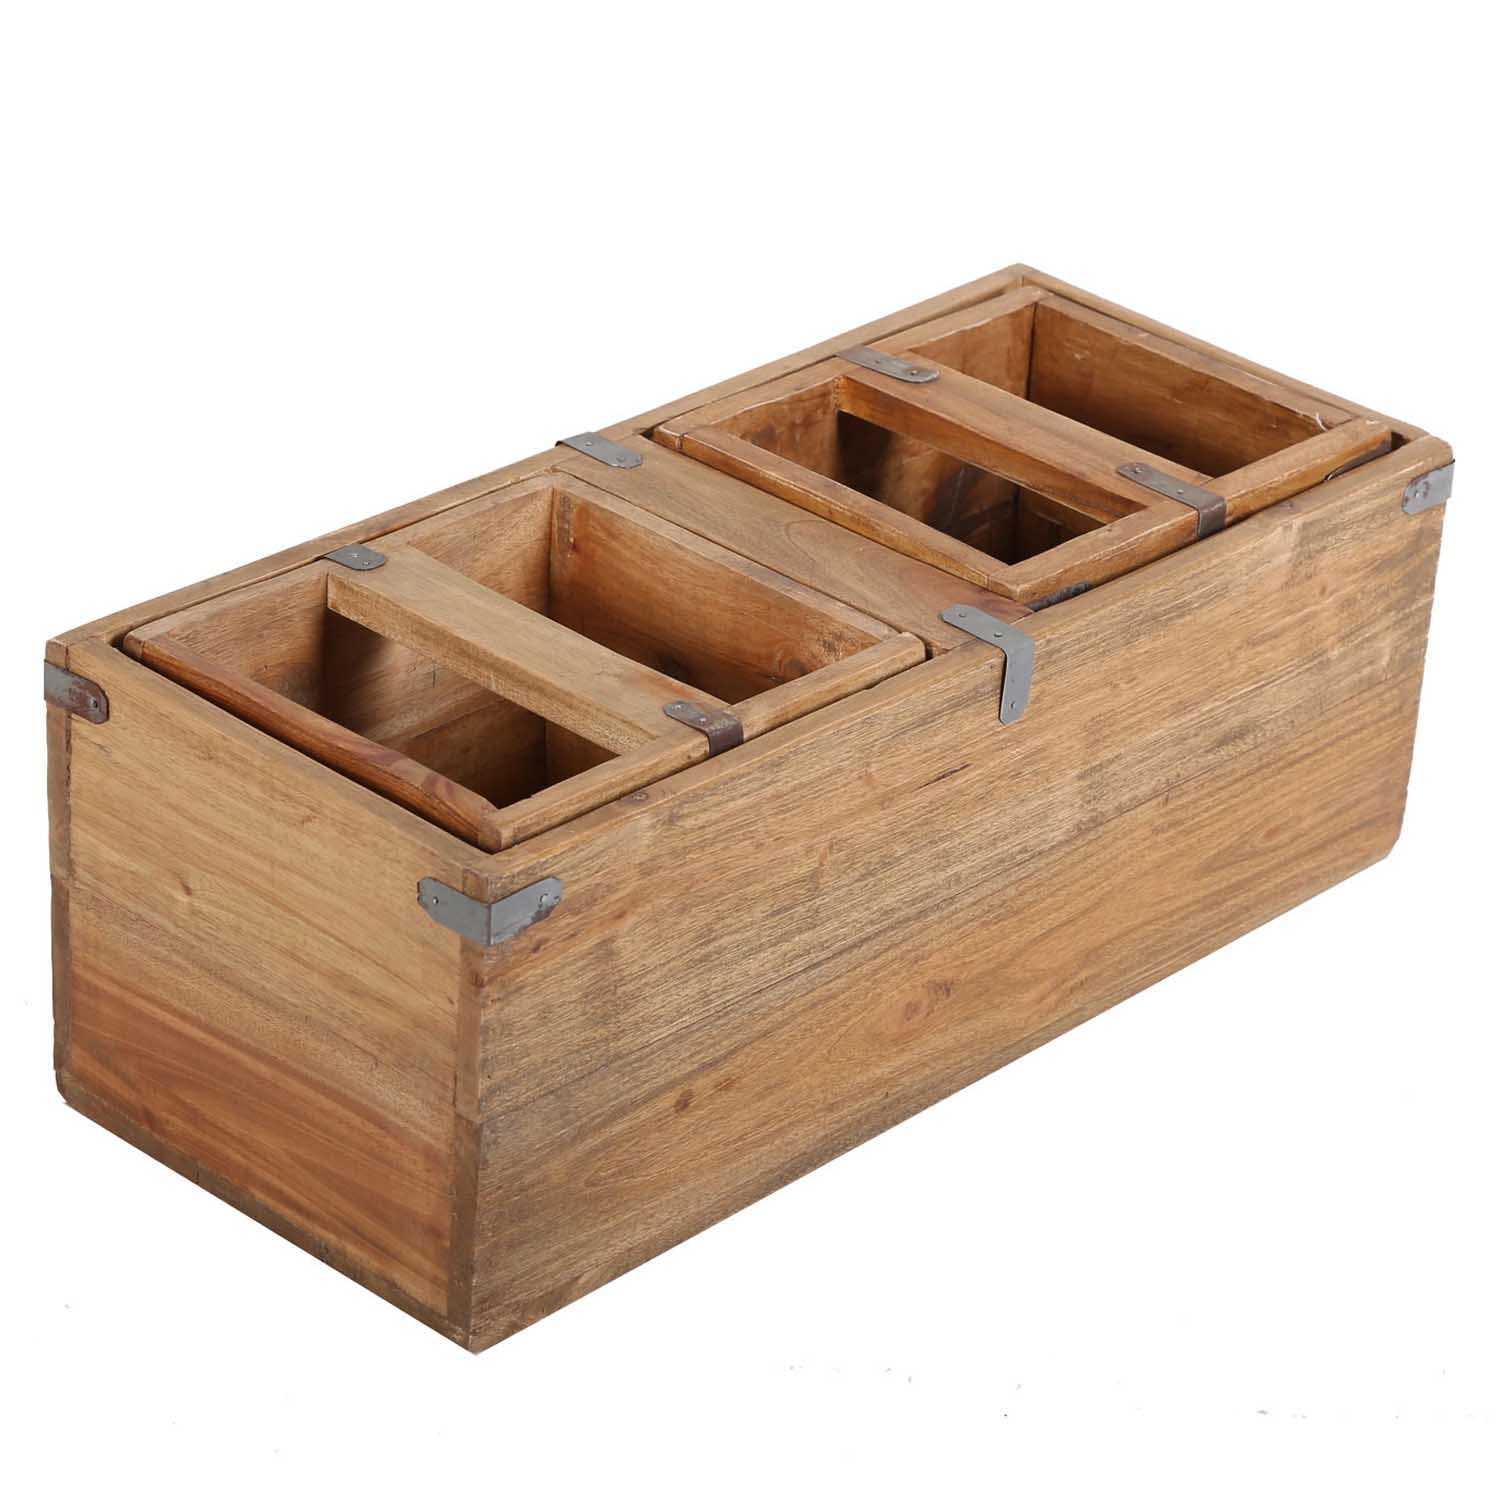 Casa Möbelkiste Teak Deko recyceltem Holz Box, Holz 3er Kiste Holzbox Moro Set Teak gefertigt Enzo aus Balkonkasten